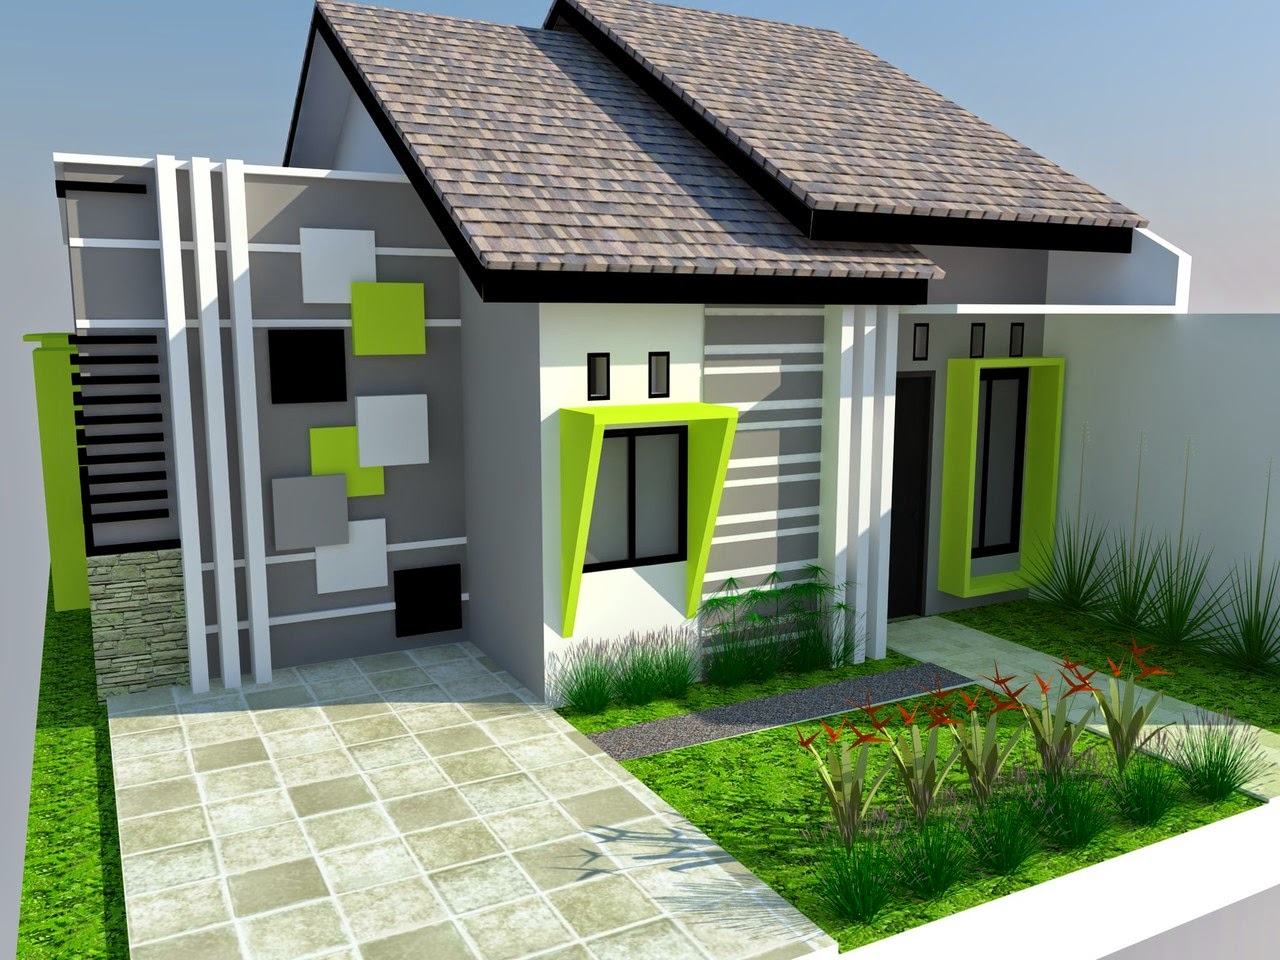 62 Desain Rumah Minimalis Ramah Lingkungan Desain Rumah Minimalis Terbaru